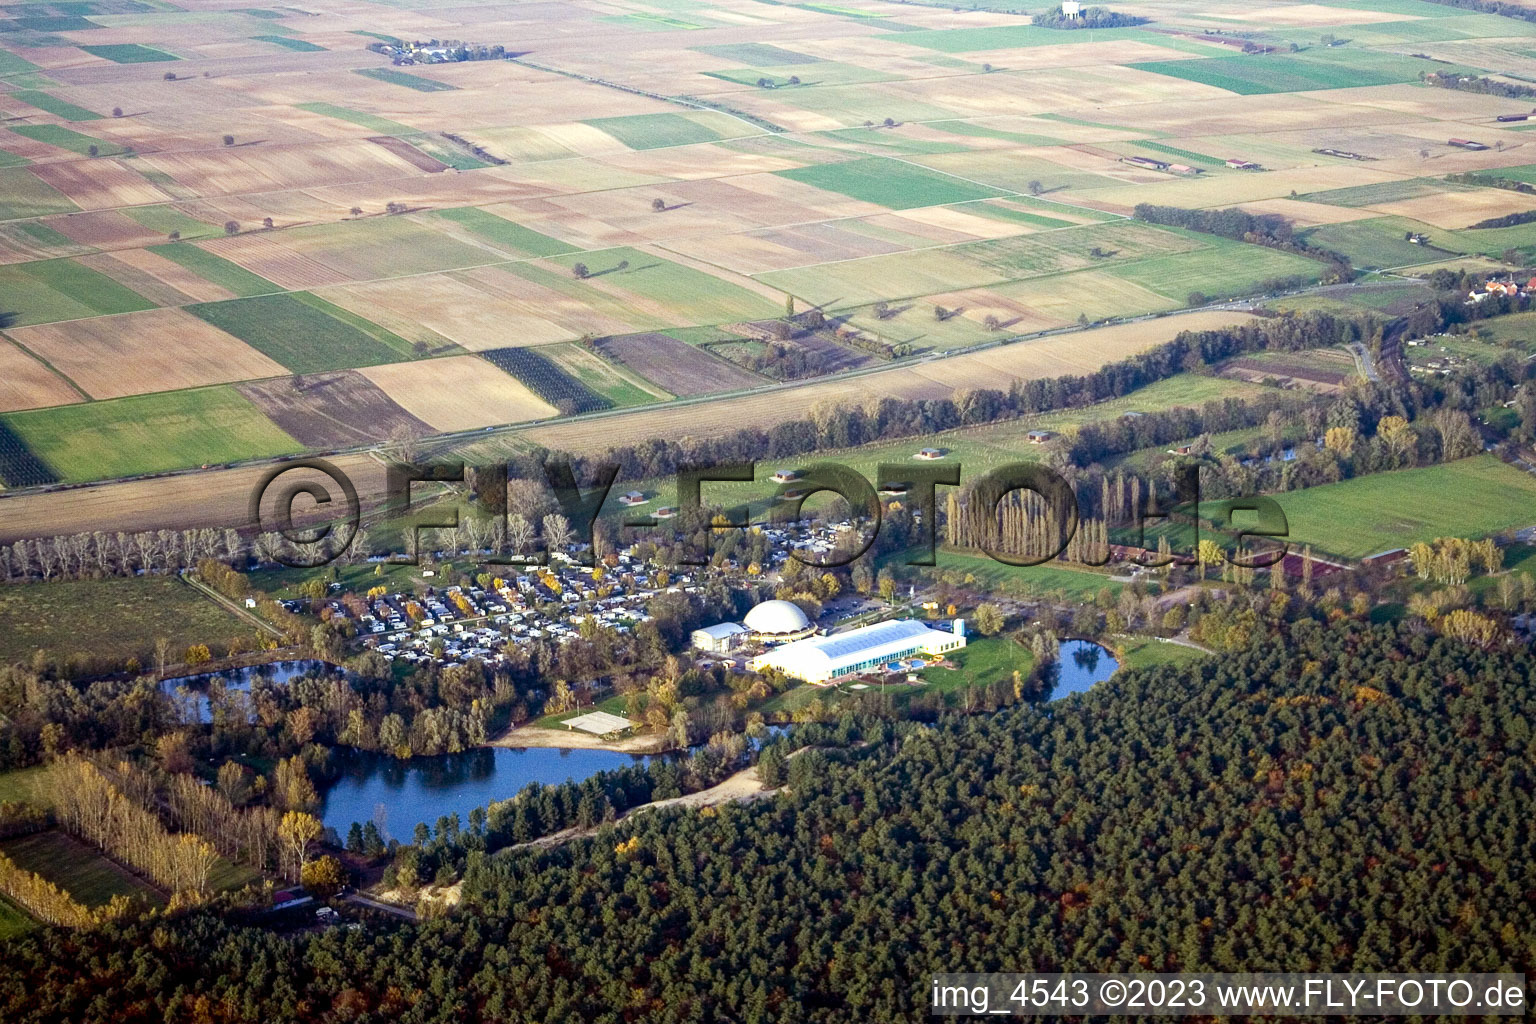 Vue aérienne de Moby Dick, camping à Rülzheim dans le département Rhénanie-Palatinat, Allemagne